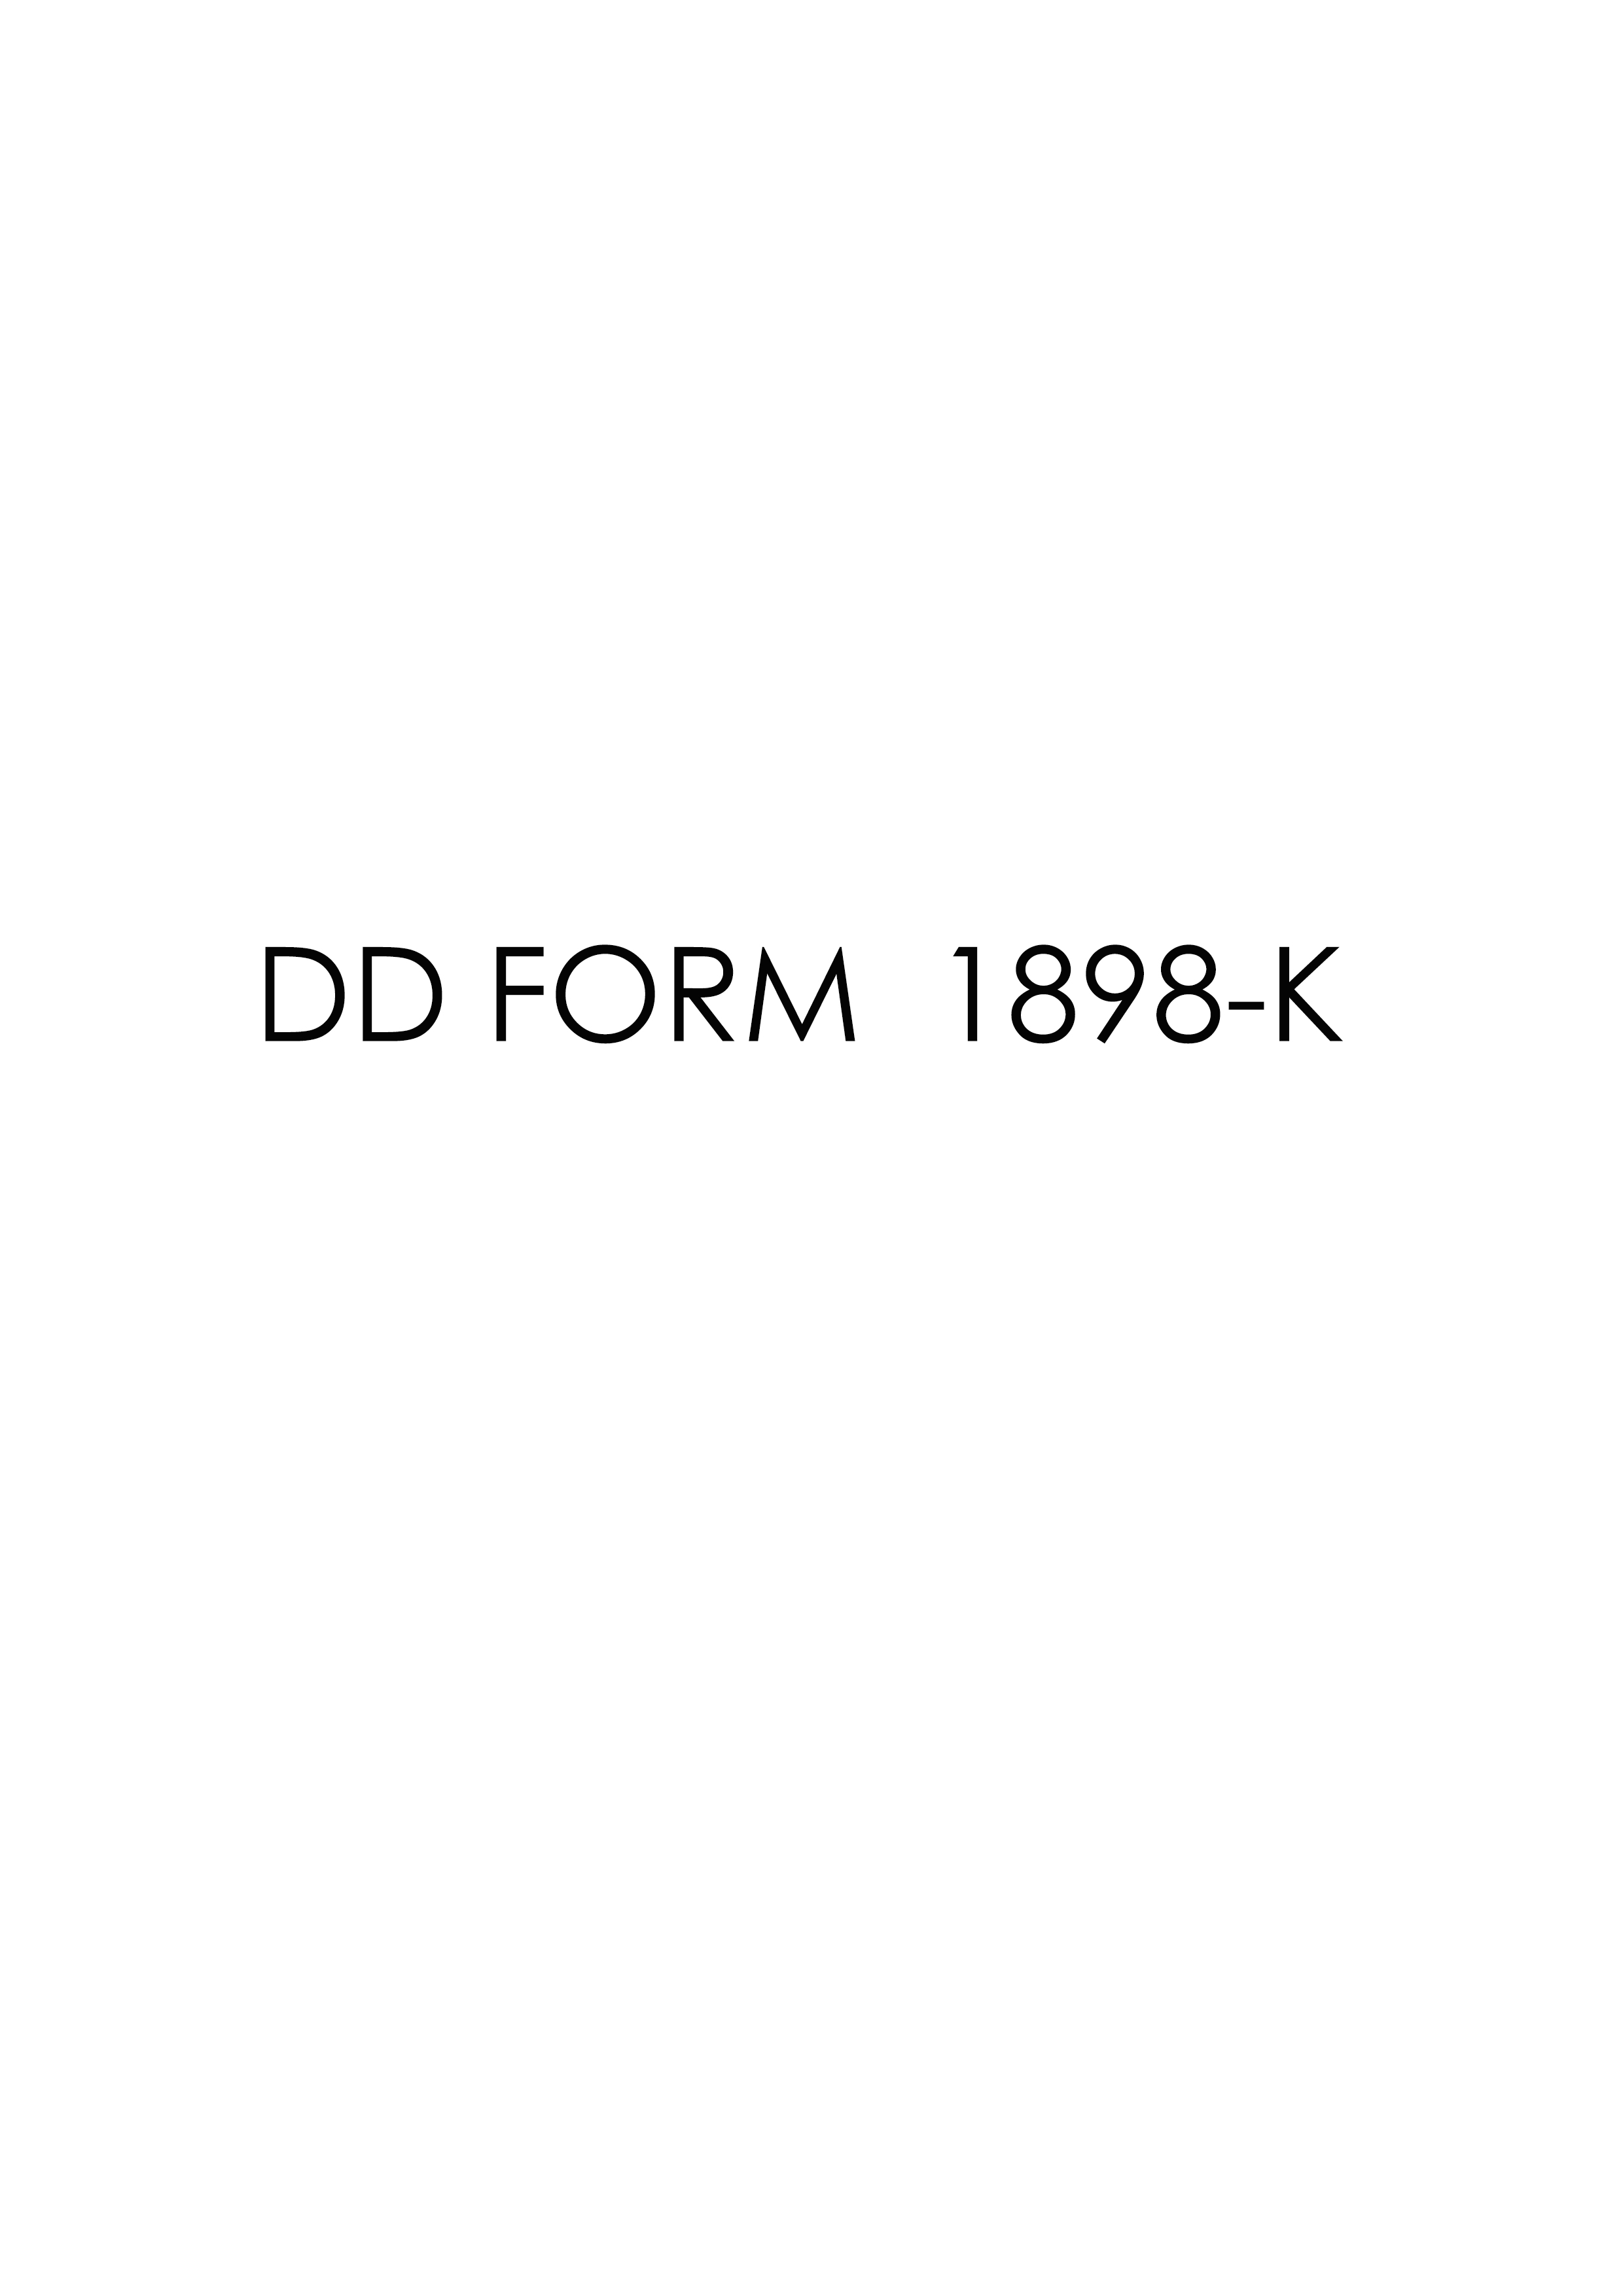 Download Fillable dd Form 1898-K